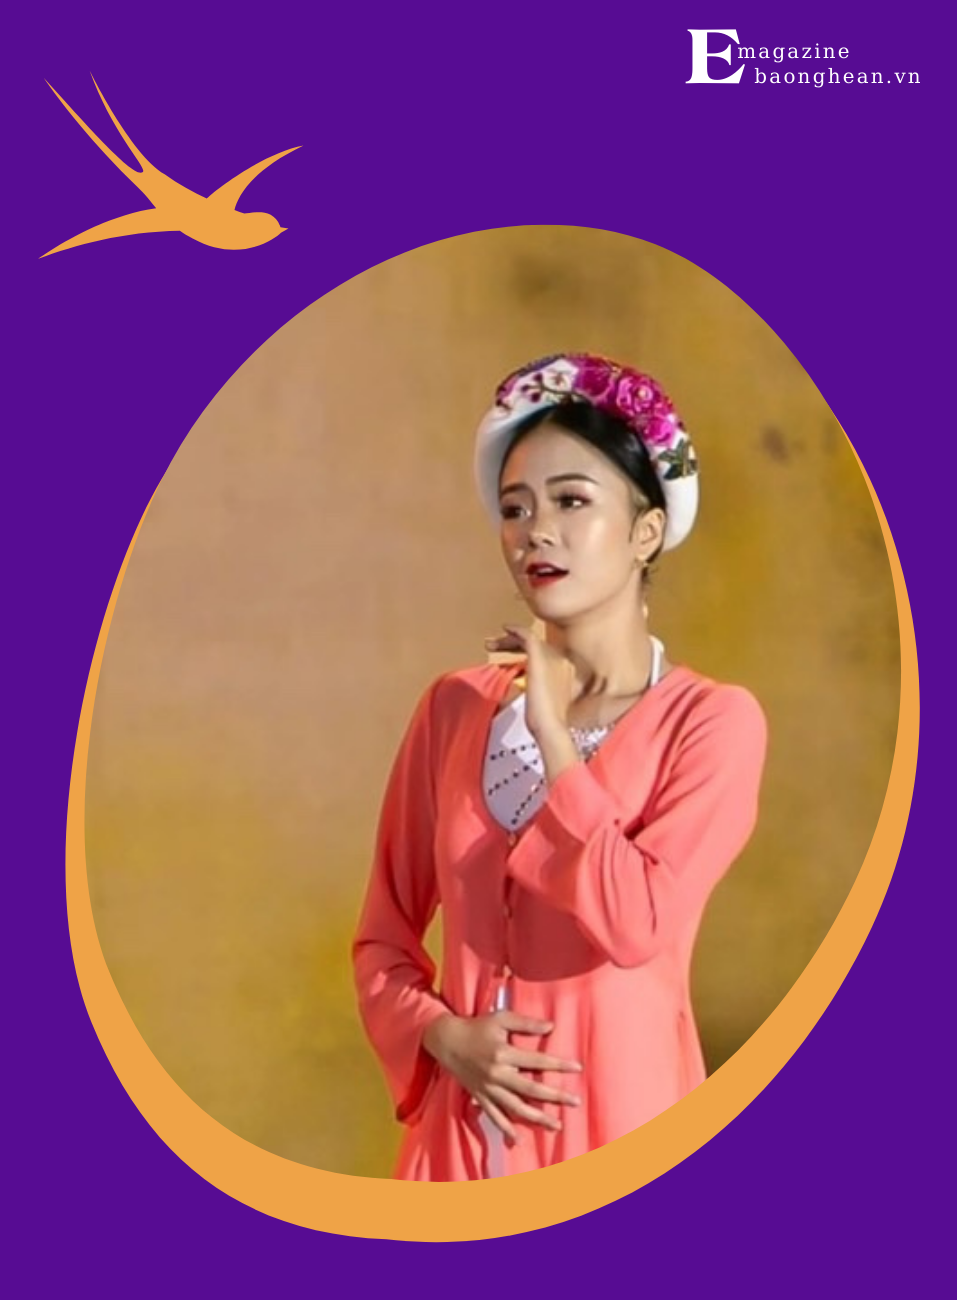 Hoàng Yến hóa thân thành nữ sĩ Hồ Xuân Hương trong vở diễn cùng tên.